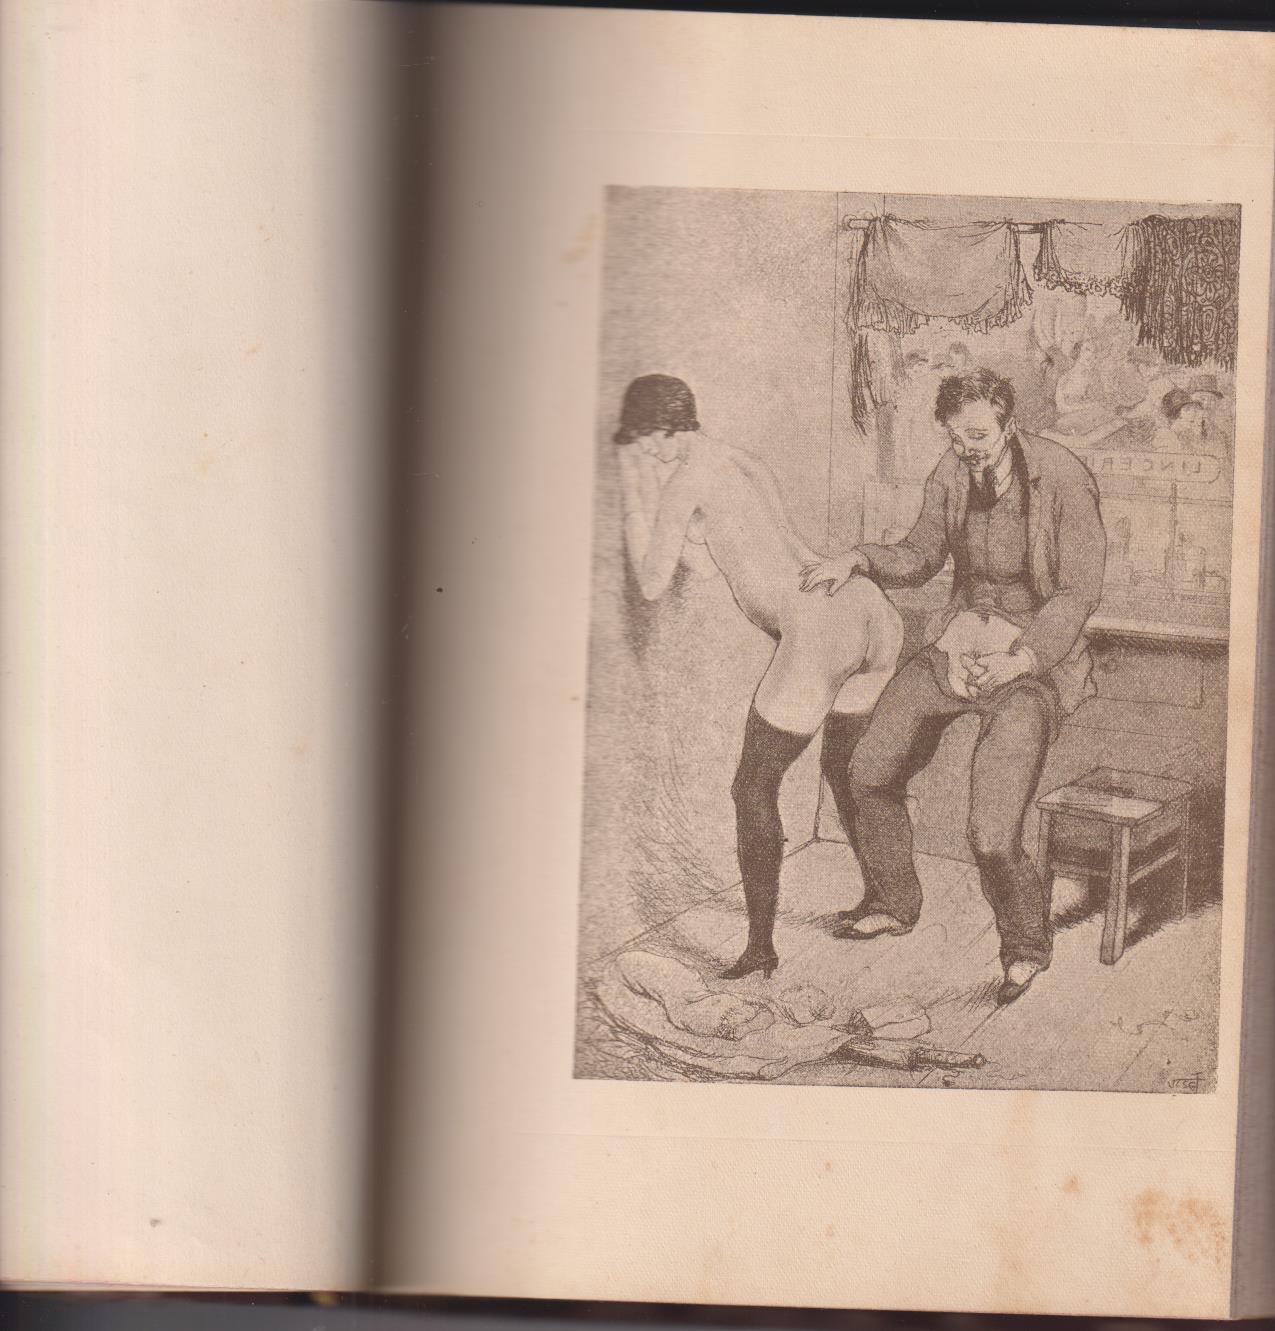 Louise Dormienne. Los Caprichos del Sexo. Editorial aurora México, 1931. MUY RARO